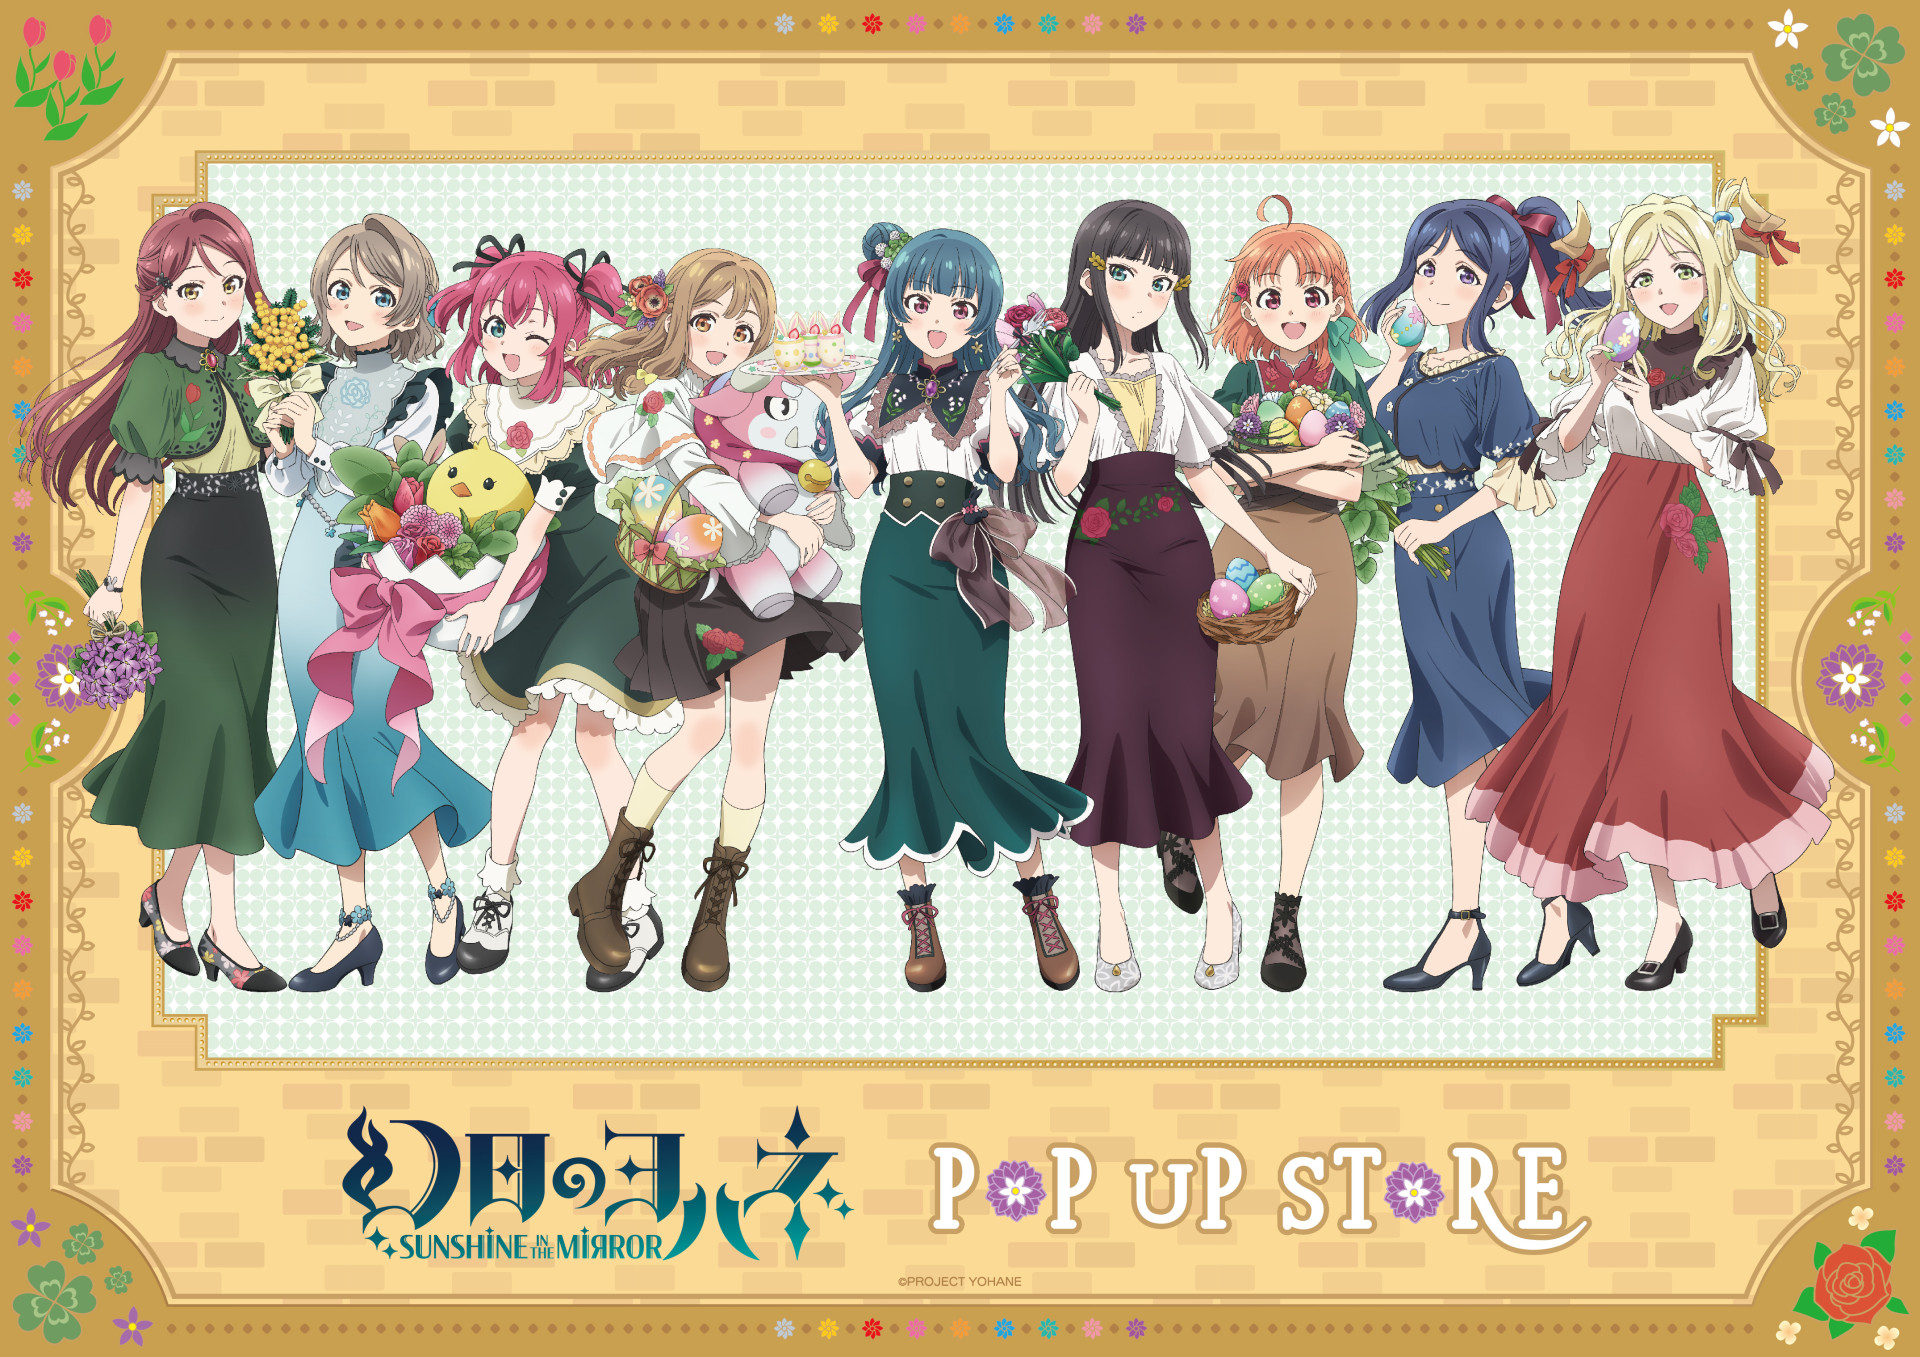 『幻日のヨハネ-SUNSHINE in the MIRROR-』 POP UP STORE がハンズ5店舗にて開催決定！